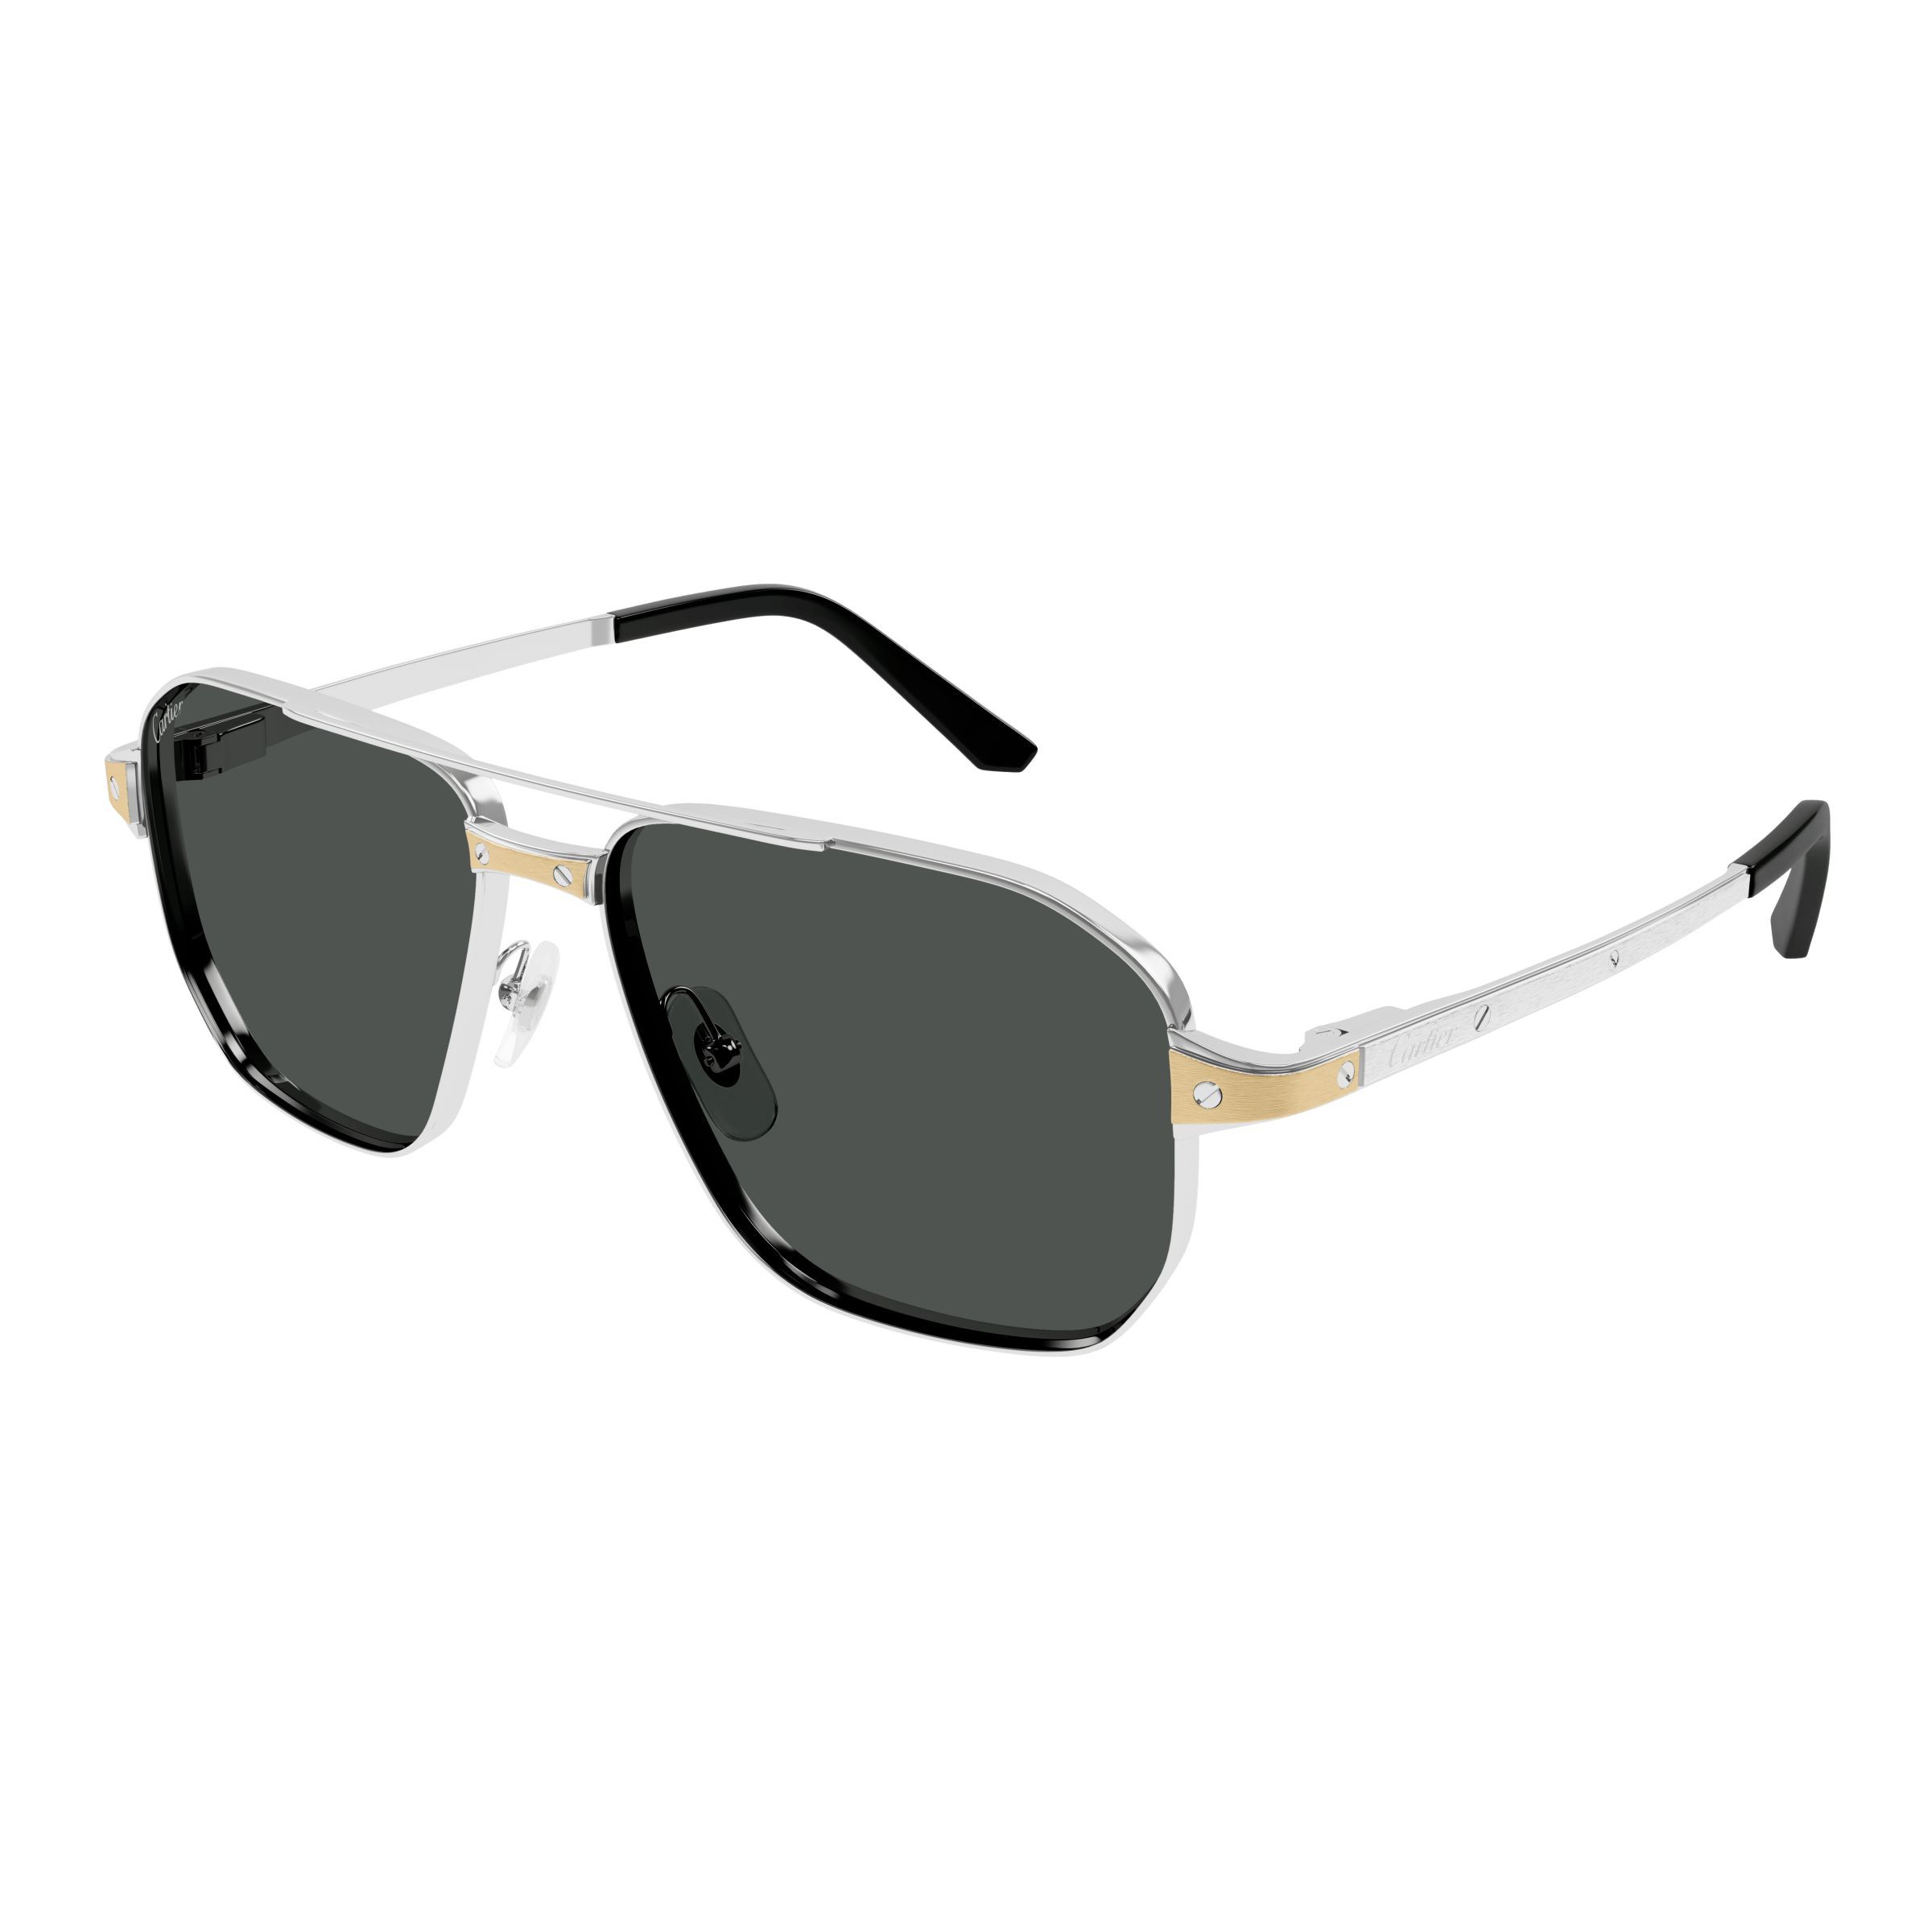 CT0424S Square Sunglasses 001 - size 59